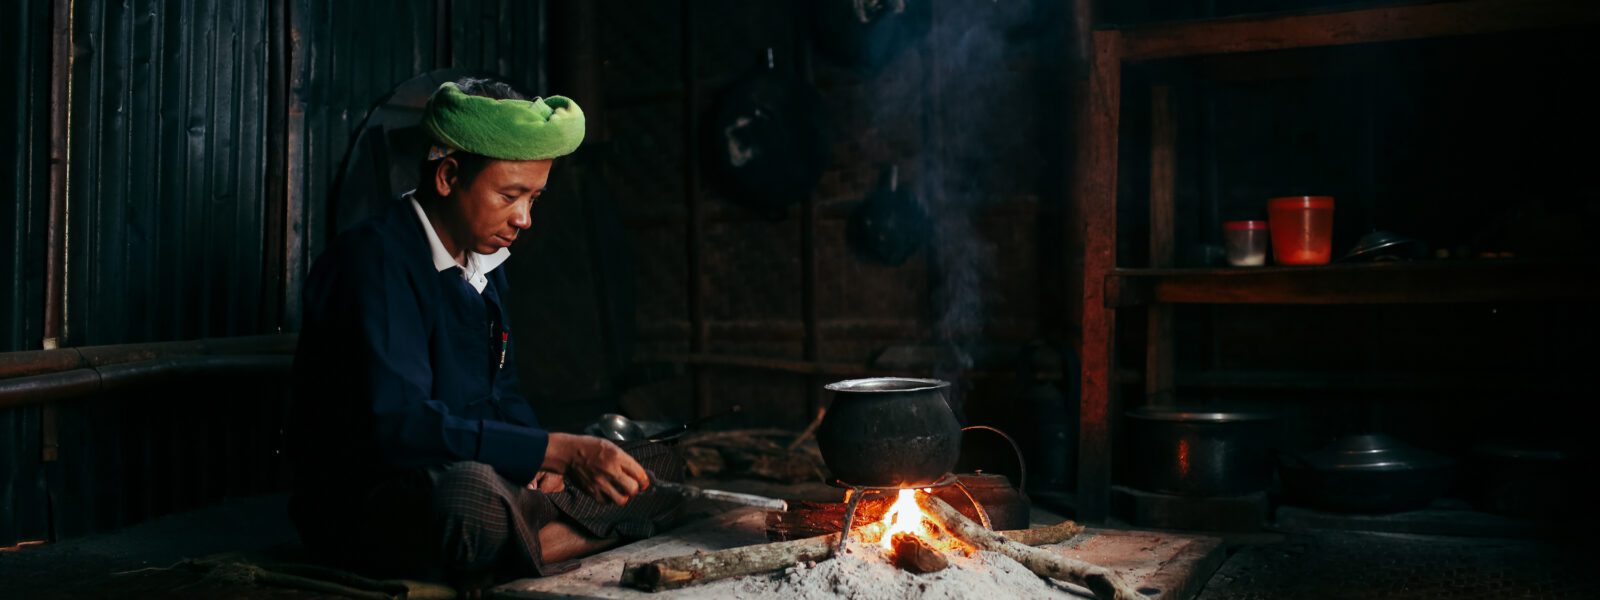 Ko San Tu cooking in his kitchen, Shan State, Myanmar